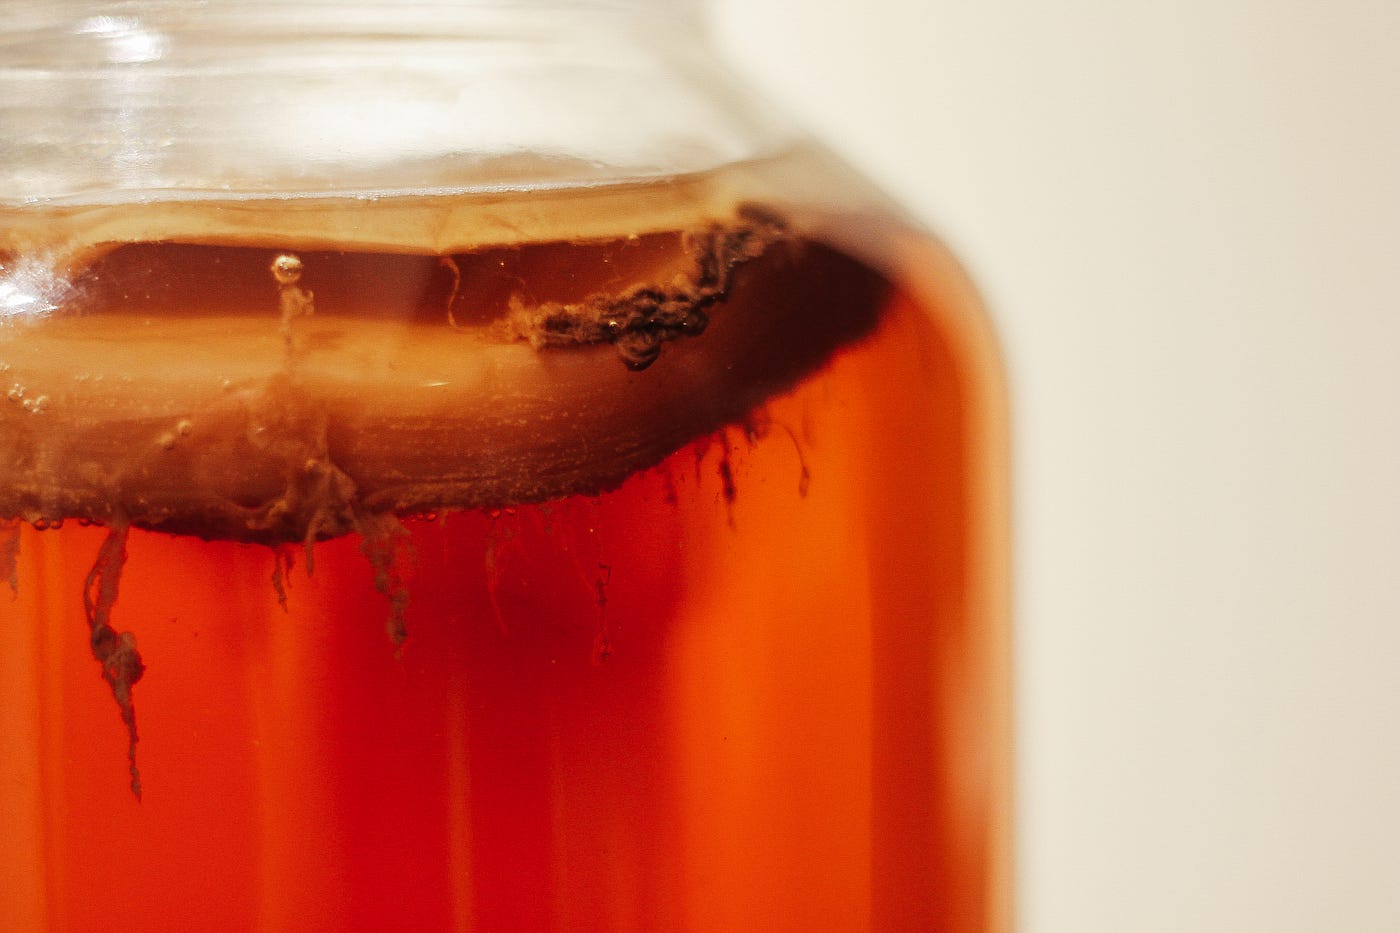 Close-up of a mason jar containing amber-colored kombucha.